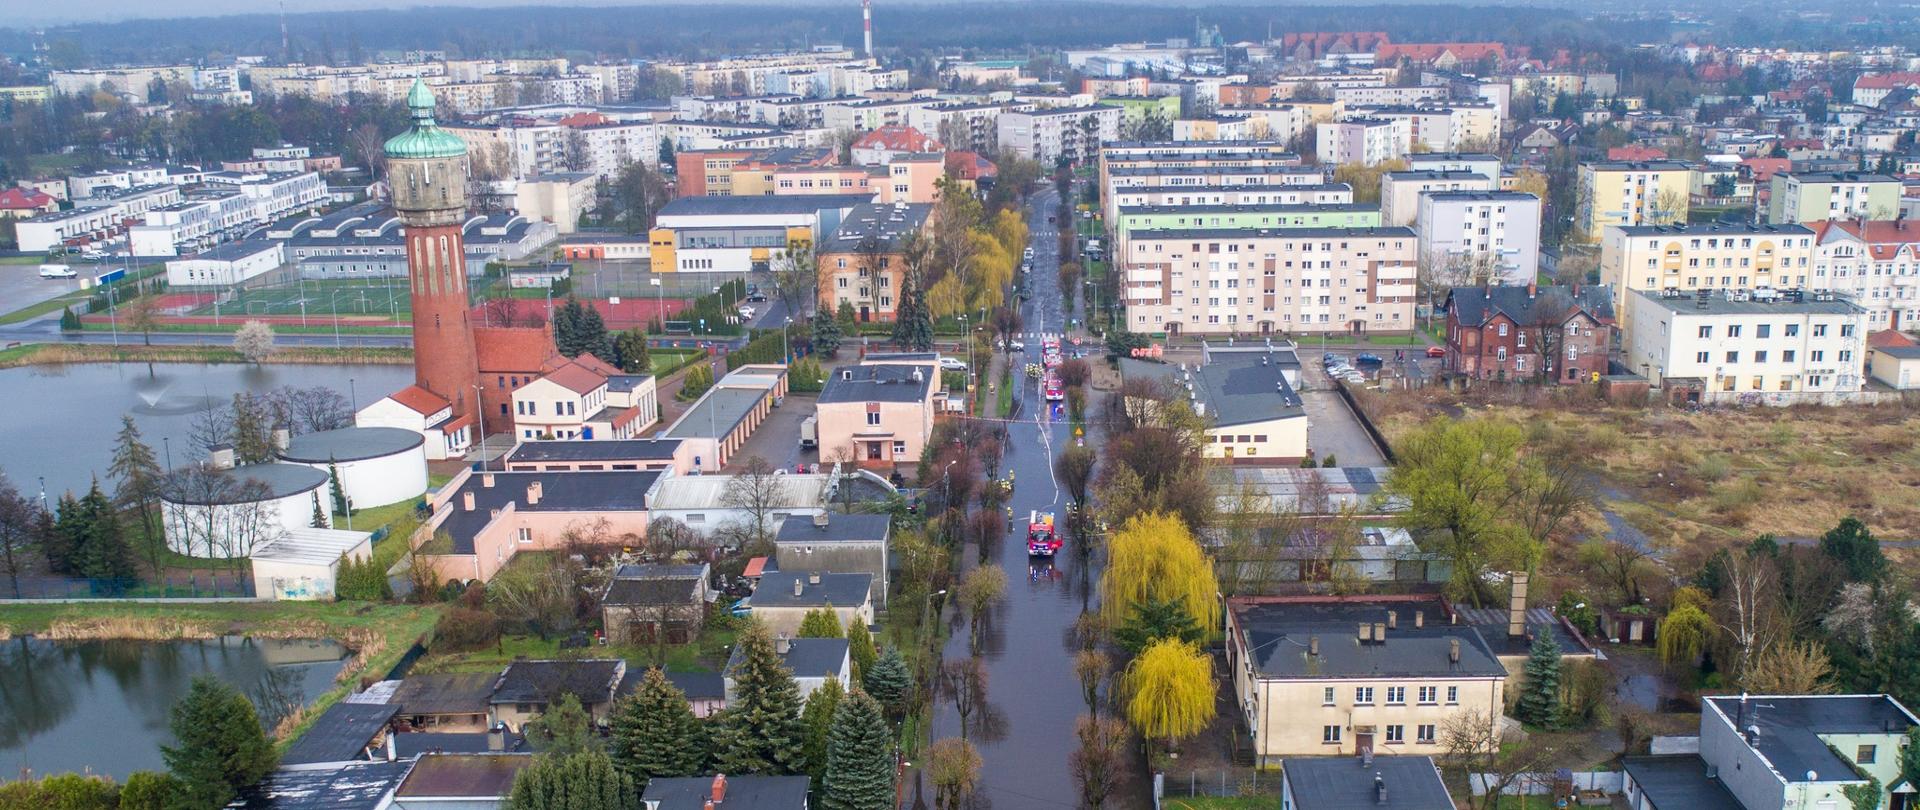 Zdjęcie z lotu ptaka, przedstawia panoramę Wrześni , zalaną ulicę i trzy wozy strażackie wypompowujące wodę